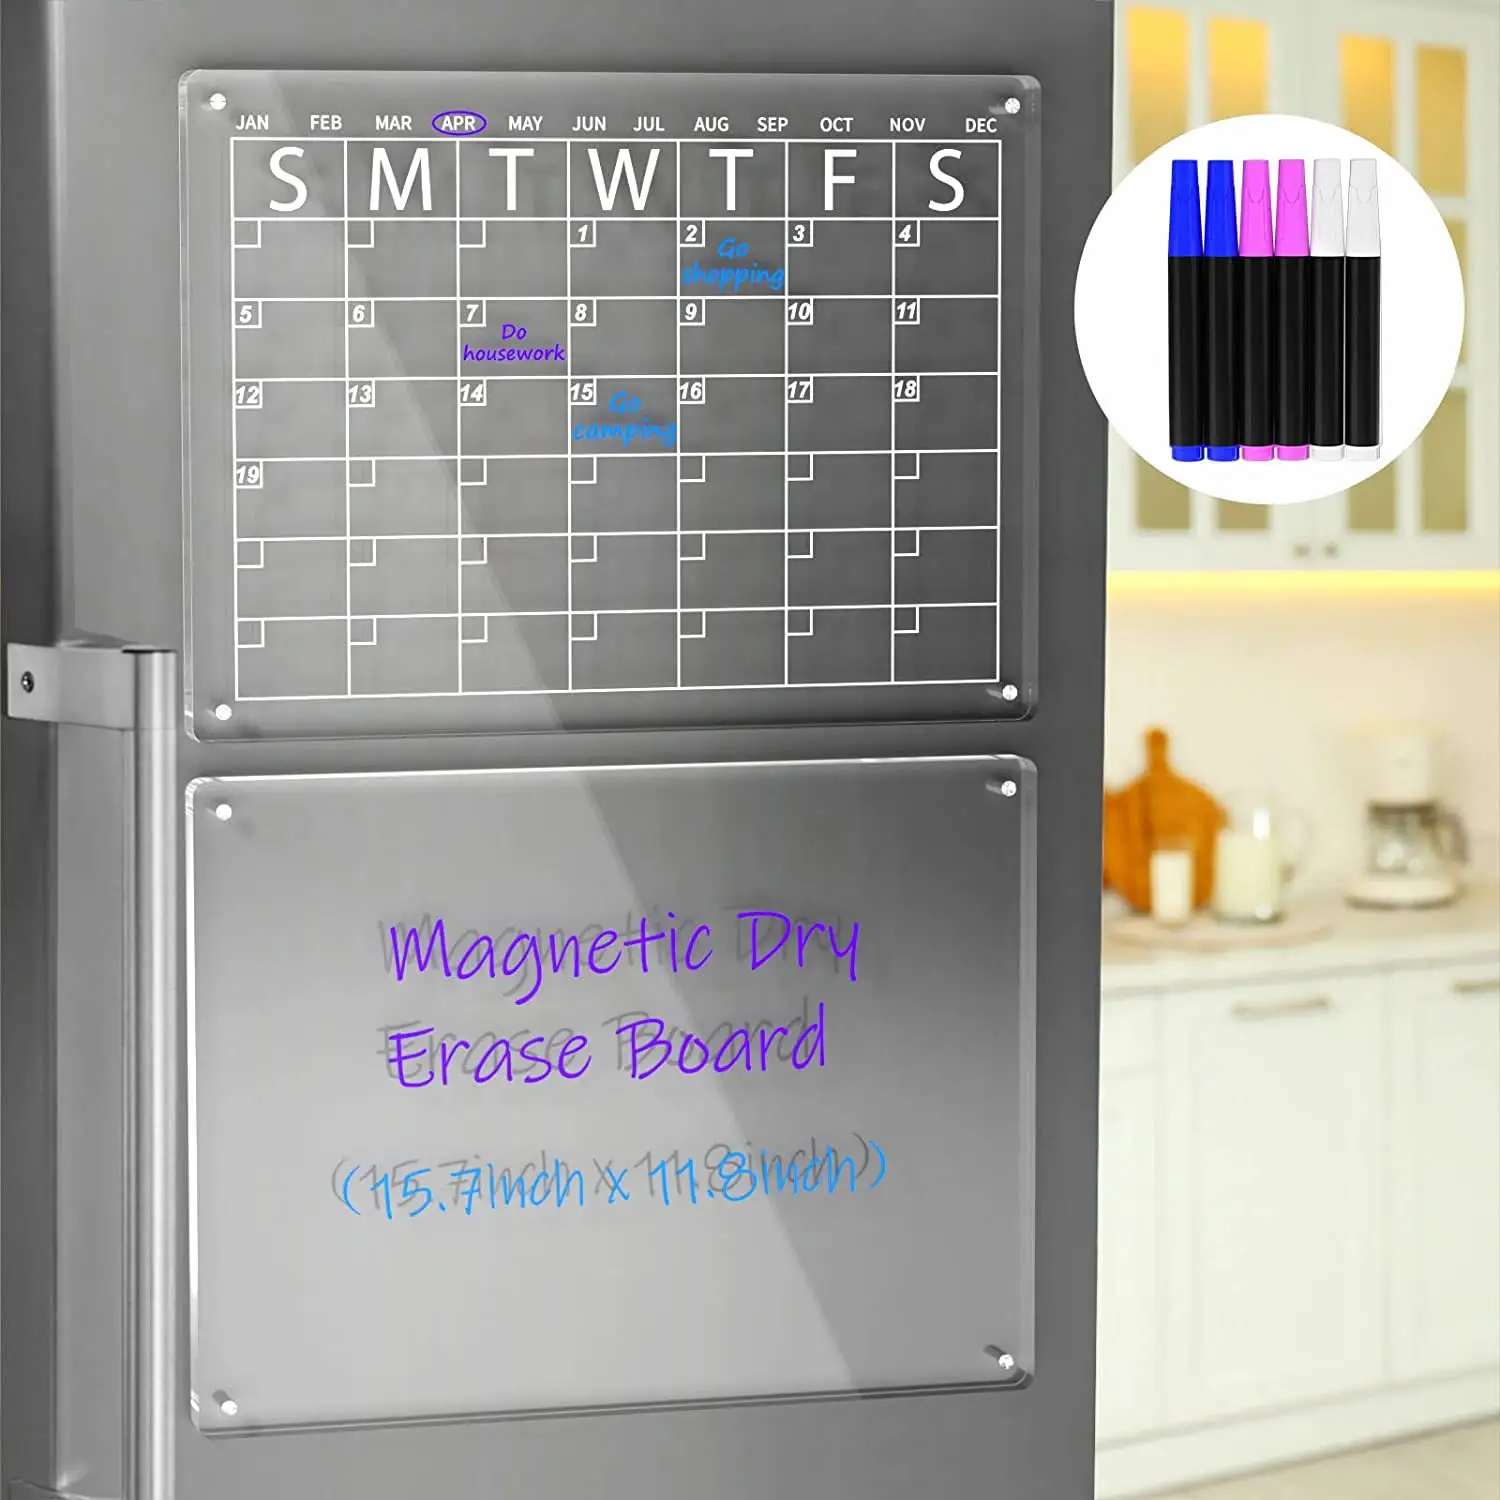 Tableau magnétique acrylique effaçable à sec pour réfrigérateur planificateur hebdomadaire mensuel autocollant de tableau blanc calendrier magnétique de réfrigérateur